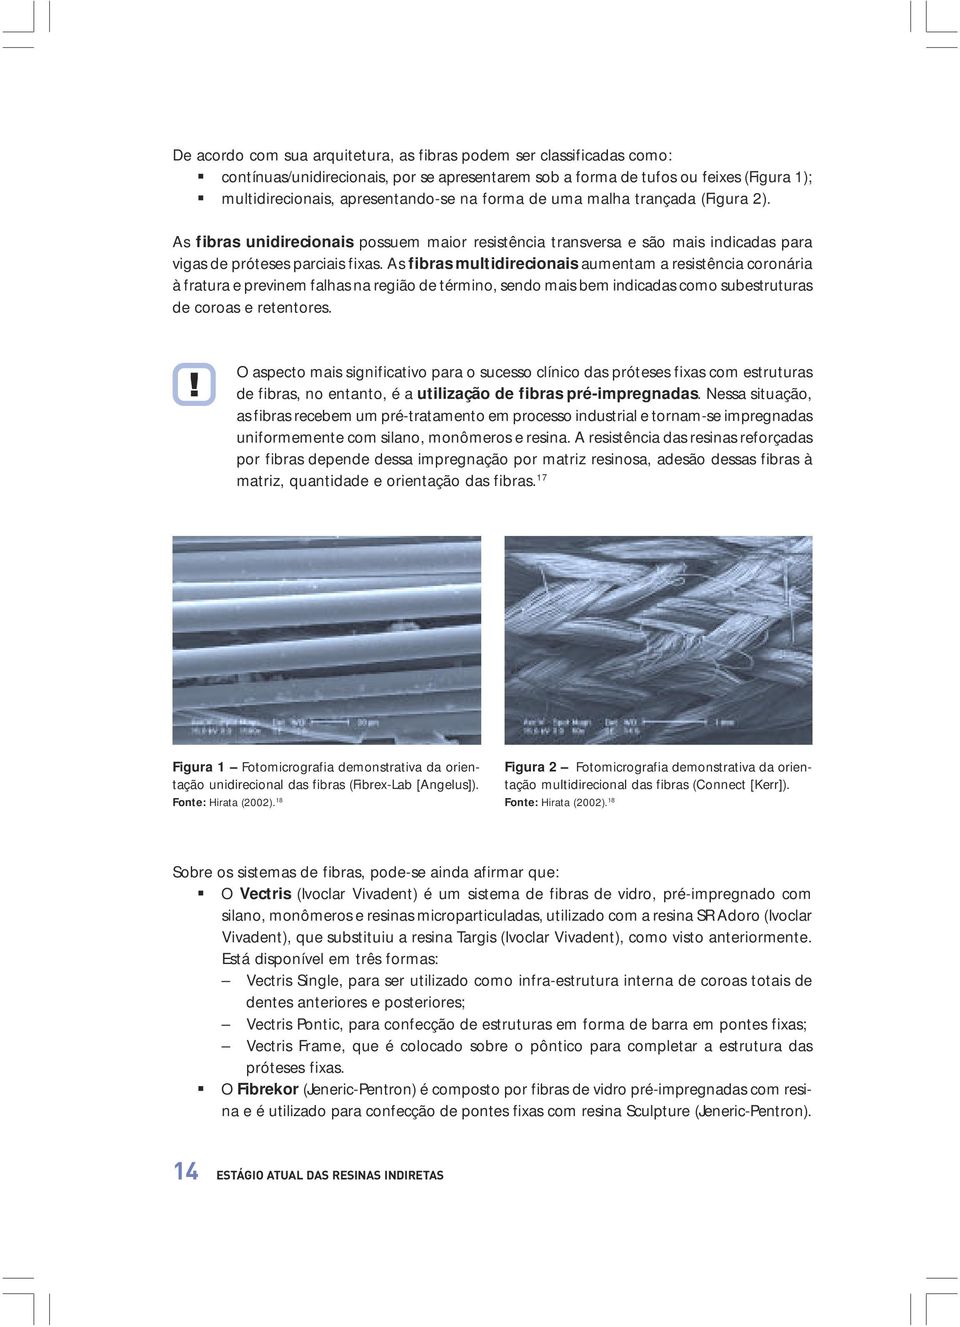 As fibras multidirecionais aumentam a resistência coronária à fratura e previnem falhas na região de término, sendo mais bem indicadas como subestruturas de coroas e retentores.